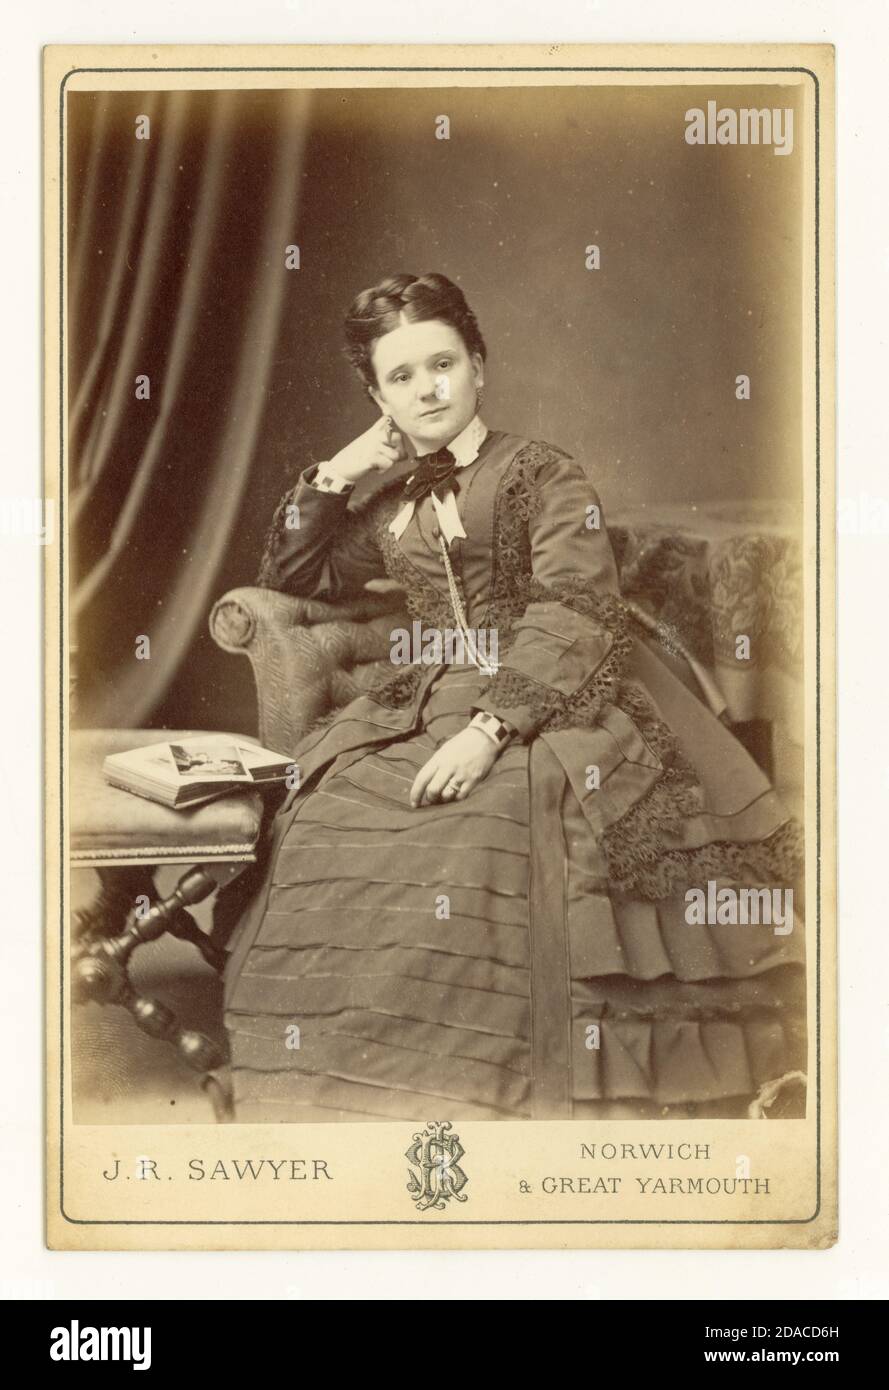 Original Victorian gabinete tarjeta estudio retrato de la mujer bonita, estudio de J.R. Sawyer, Norwich o Great Yarmouth, Norfolk, fechado el 1873 de septiembre. Foto de stock